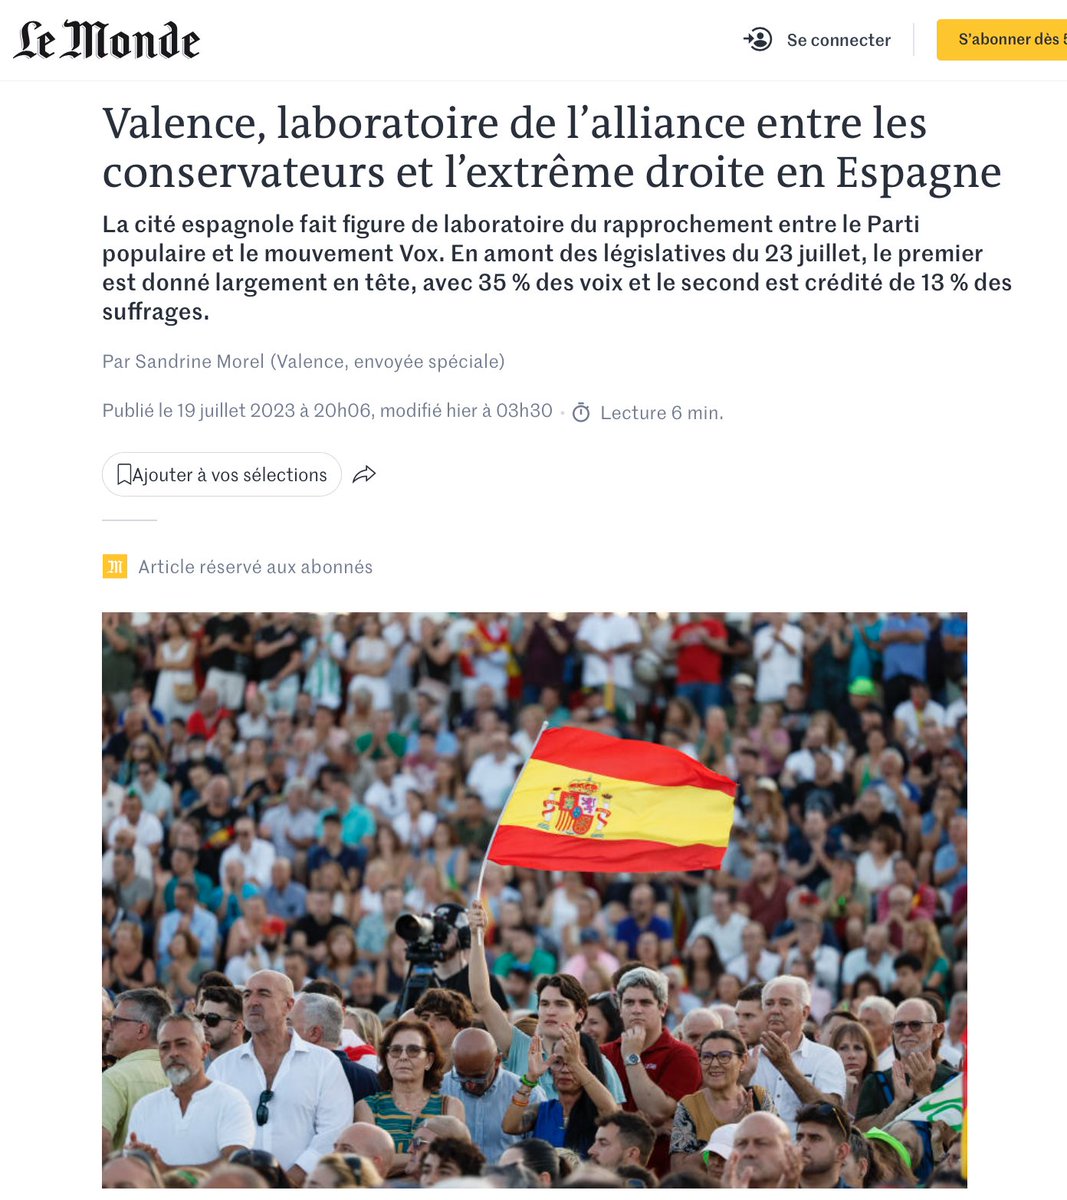 El WALL STREET JOURNAL ayer, y LE MONDE hoy, hablan del fenómeno Vox en la Comunidad Valenciana, y de lo que este domingo vamos a hacer que suceda en toda España. Mañana lo harán la RAI, la televisión flamenca y el Corriere de la Sera. 
Gracias a @margheritamvs y a @sandrinemorel…